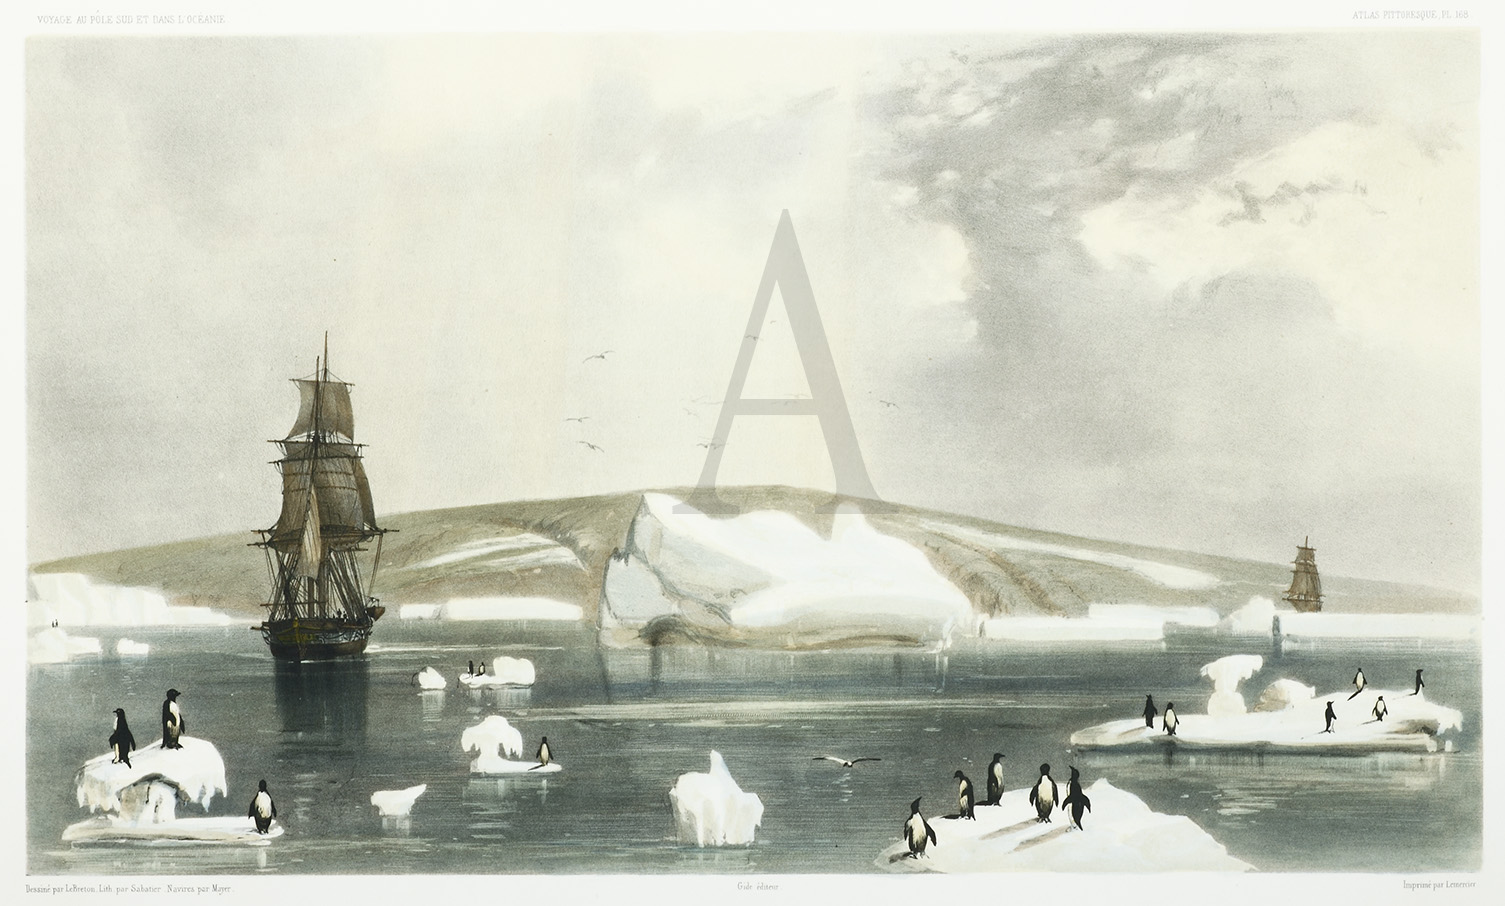 Decouverte de la Terre Adelie le 19 Janvier 1840. - Antique Print from 1842